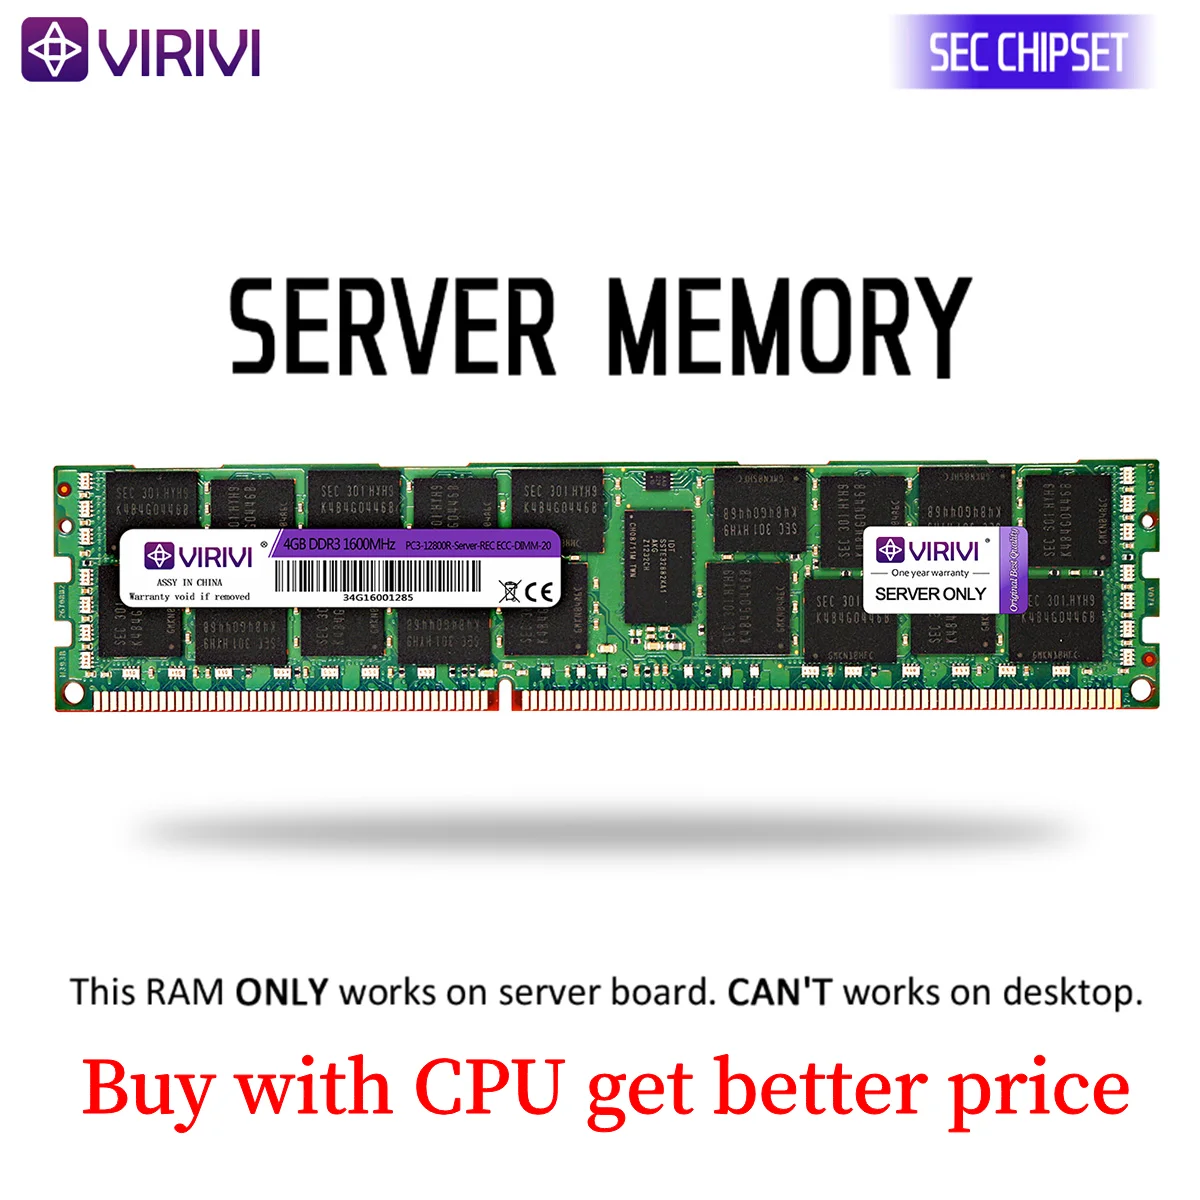 VIRIVI-Tarjeta madre para ordenador, placa base Dimmcon servidor de memoria de 1 GB 2GB 4GB 8GB 16GB 32 GB, RAM de velocidad de 1333MHz 1600Mhz 1866Mhz REG ECC 2011 de 1366 pin CPU X58 X79